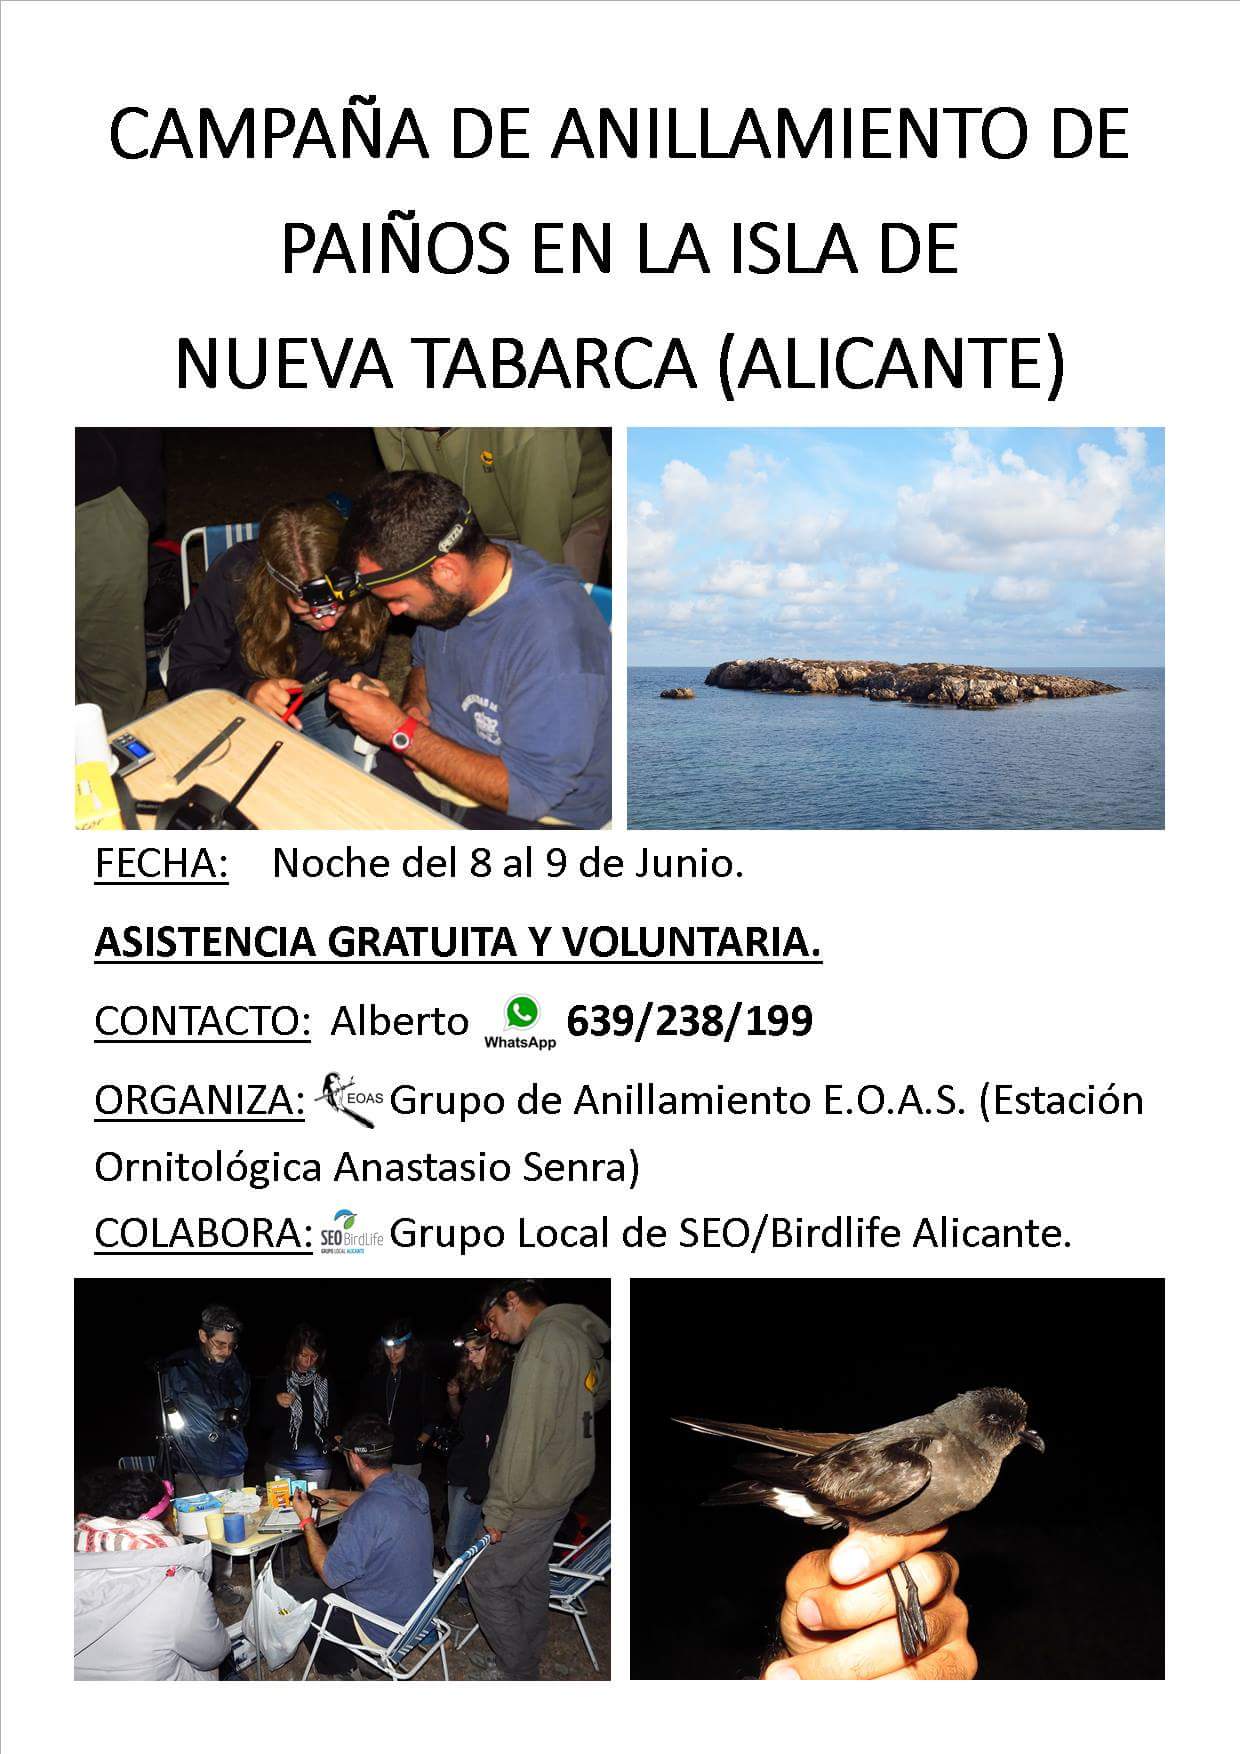 La Campaña de anillamiento de paíños en la isla de Tabarca busca voluntarios.